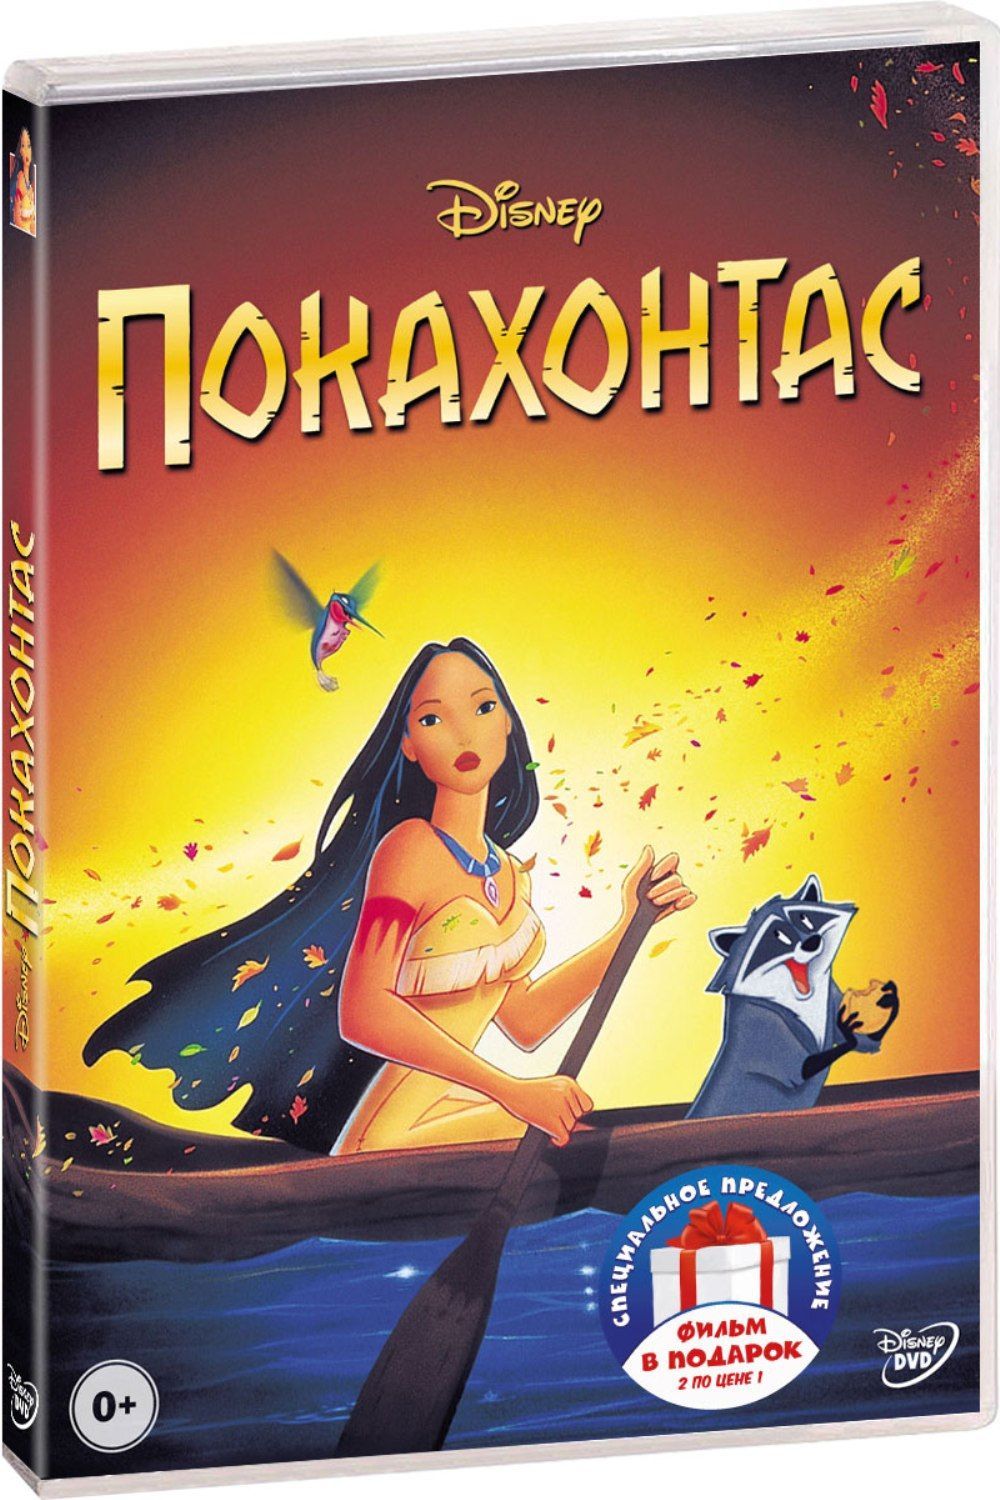 Покахонтас () смотреть онлайн бесплатно в хорошем качестве | asics-shop.ru